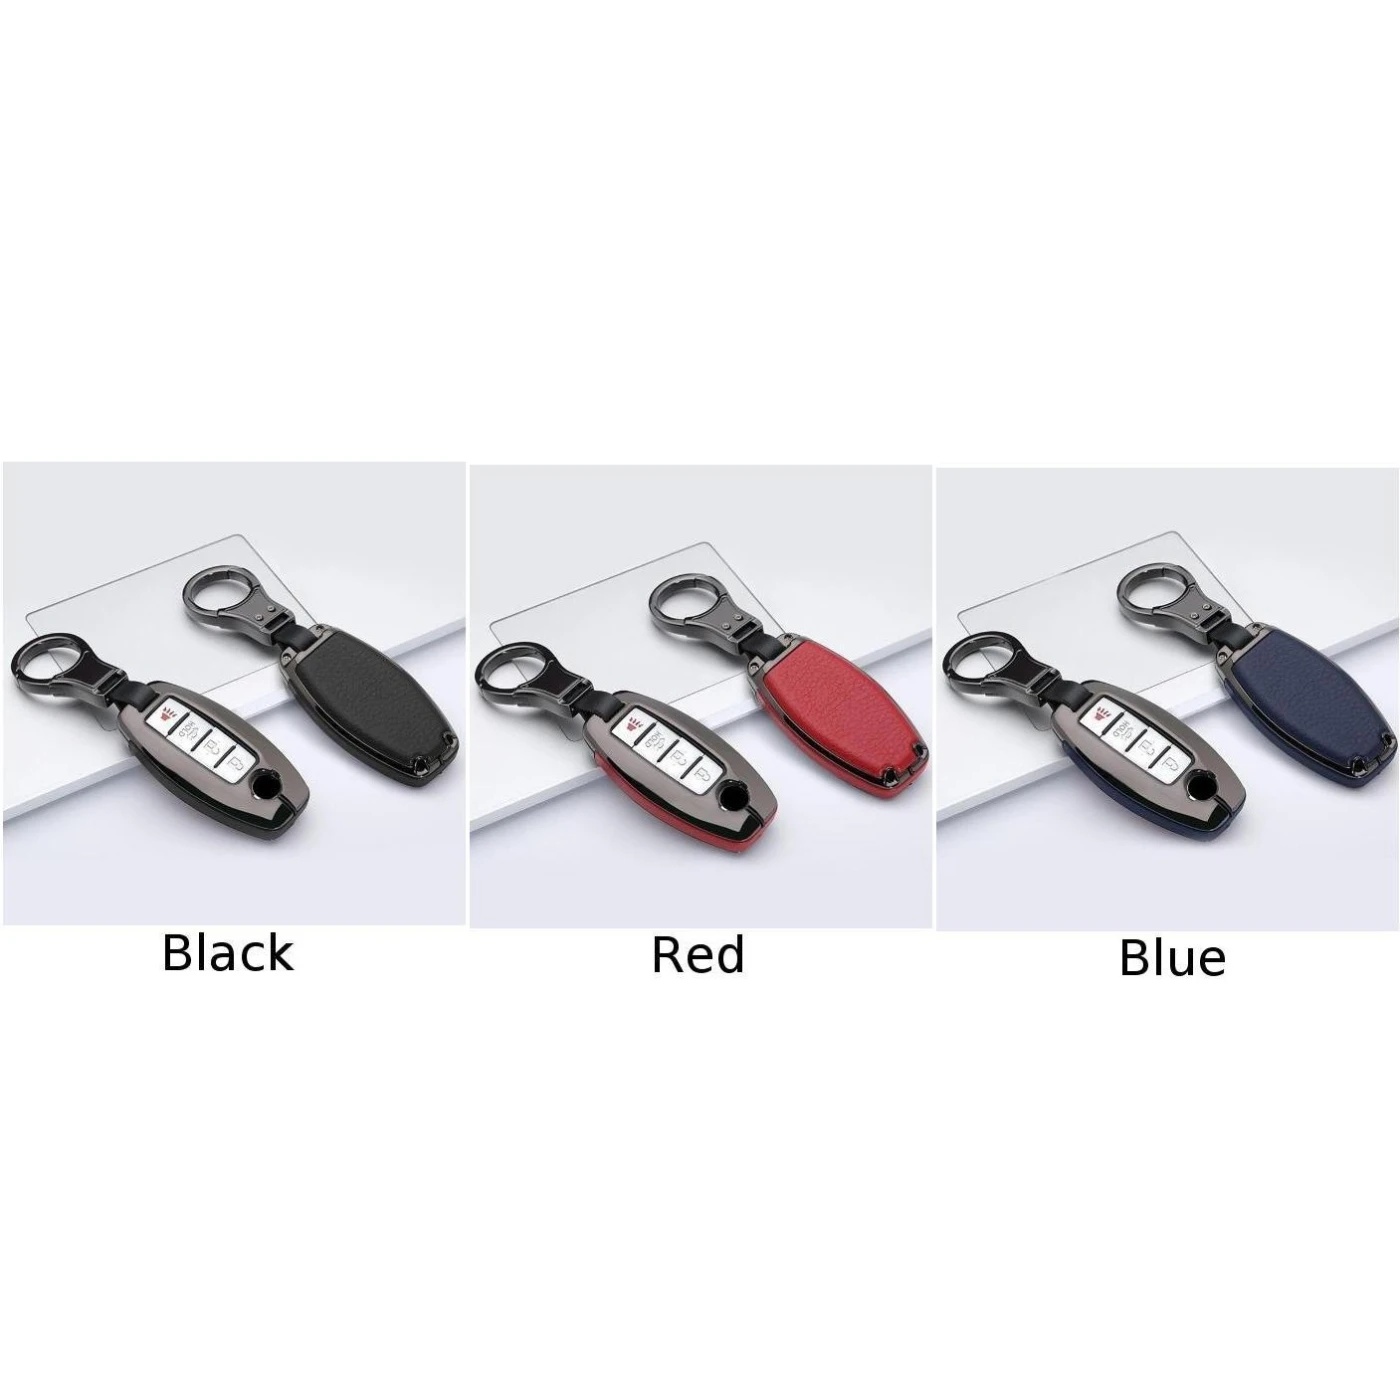 Совершенно продукт Металлический кожаный дистанционный ключ-брелок от машины чехол Брелок для Infiniti Nissan с подарочной коробкой